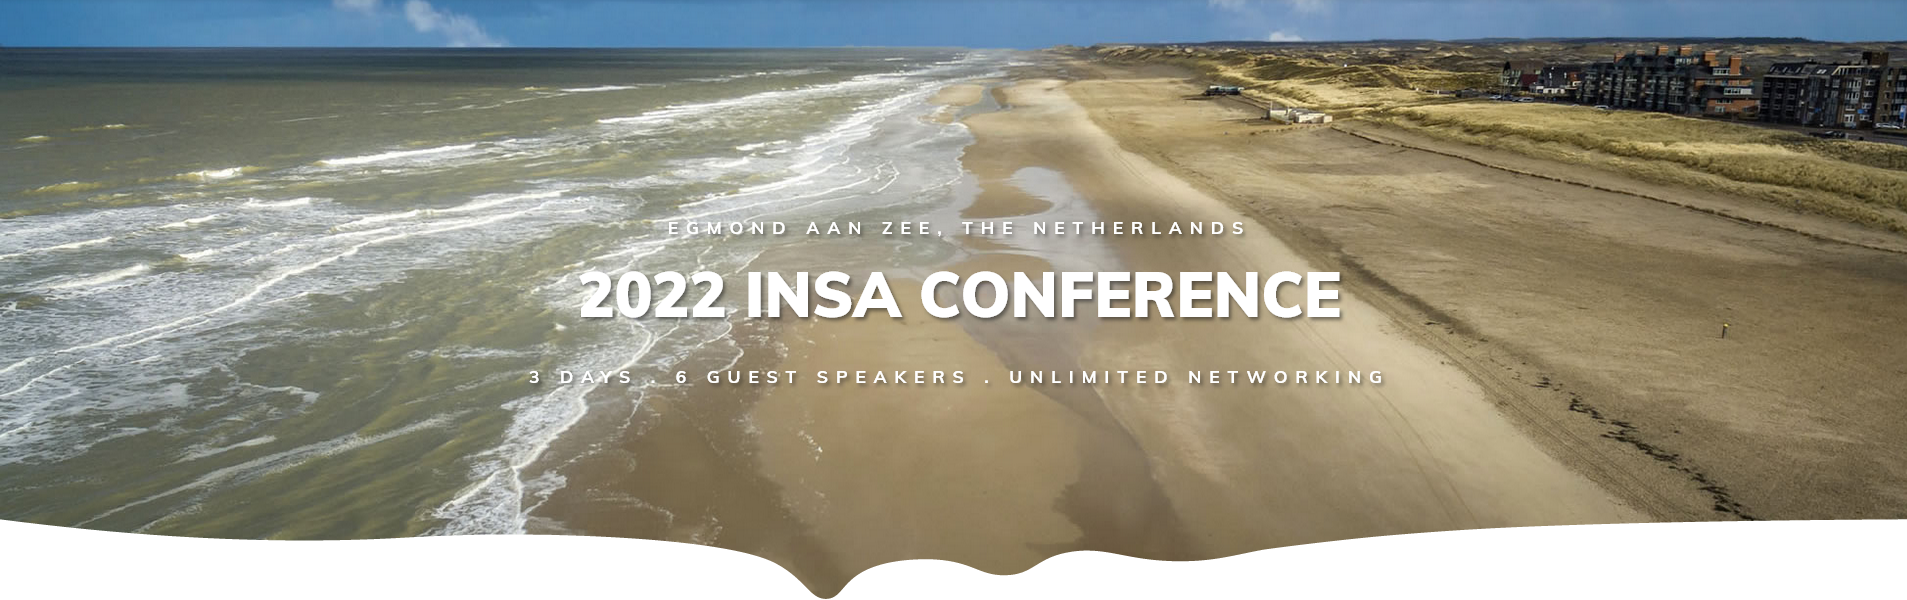 2022 INSA Conference